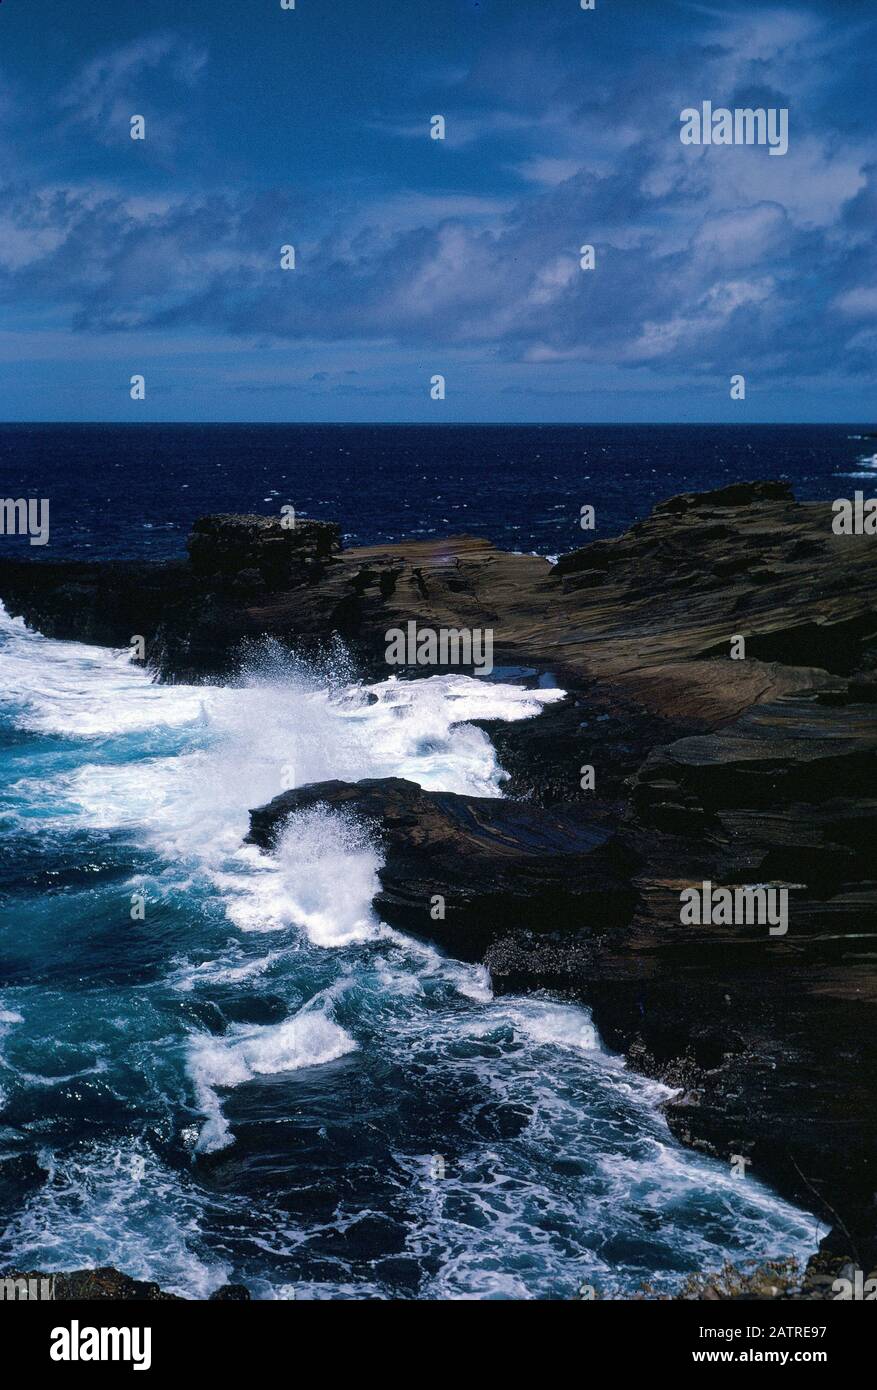 Nakuläres Foto, aufgenommen auf einer analogen 35-mm-Filmtransparenz, die vermutlich braune Felsbildung neben dem Körper des Wassers während des Tages, 1970, abbildet. Zu den wichtigsten Themen/Objekten gehören Meer, Ozean, Wasser, Felsen und Strand. () Stockfoto